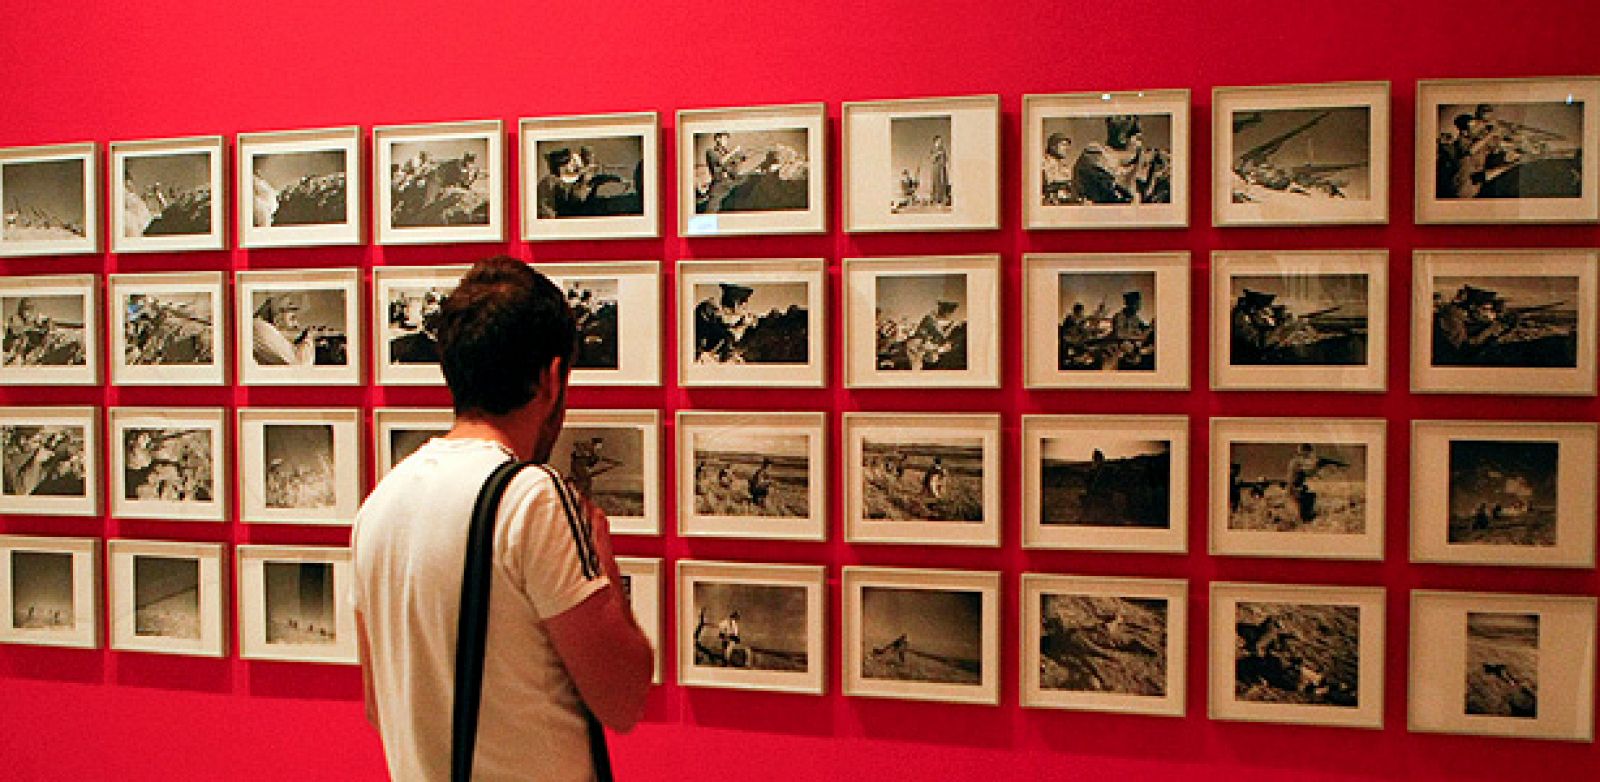 Un joven contempla algunas de las más de 250 instantáneas incluidas en la doble exposición "Gerda Taro" y "This is War! Robert Capa at Work"